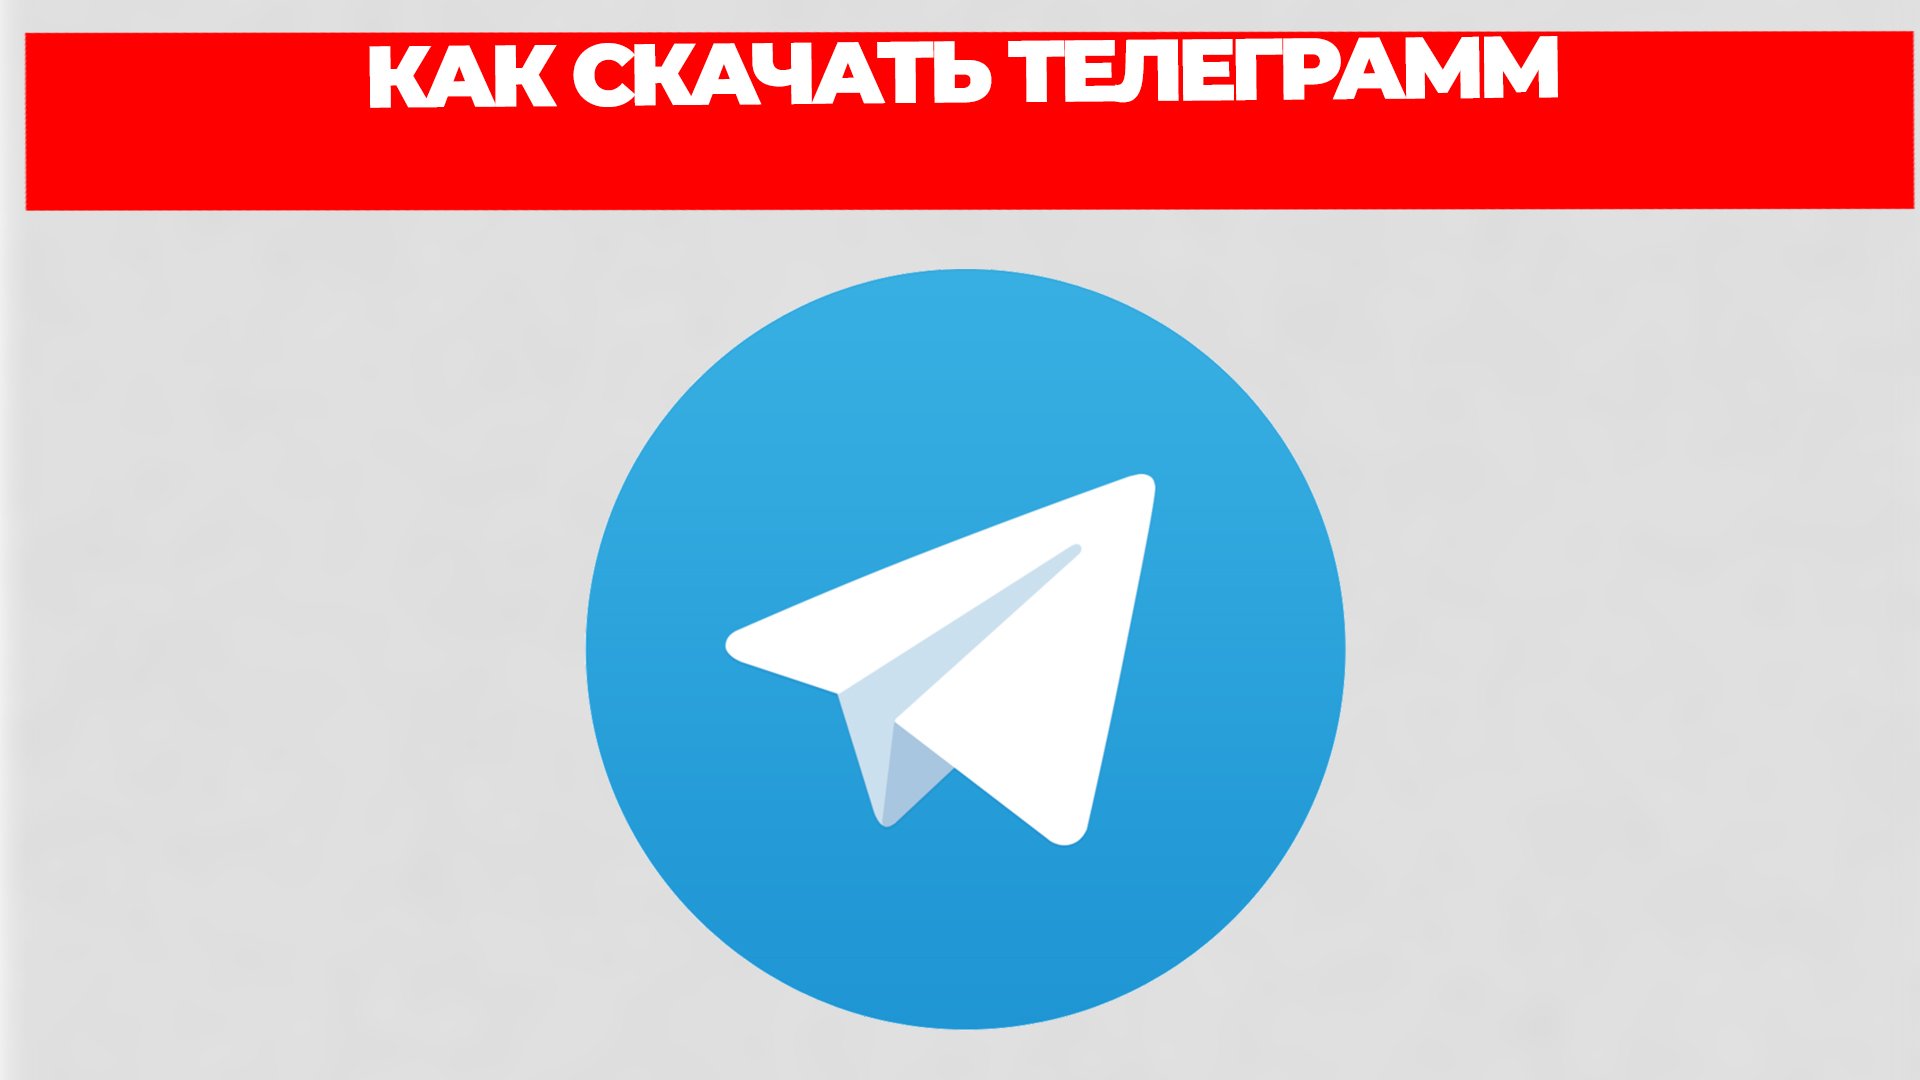 Скачать телеграмм бесплатно на телефон на русском языке без регистрации и установить фото 68